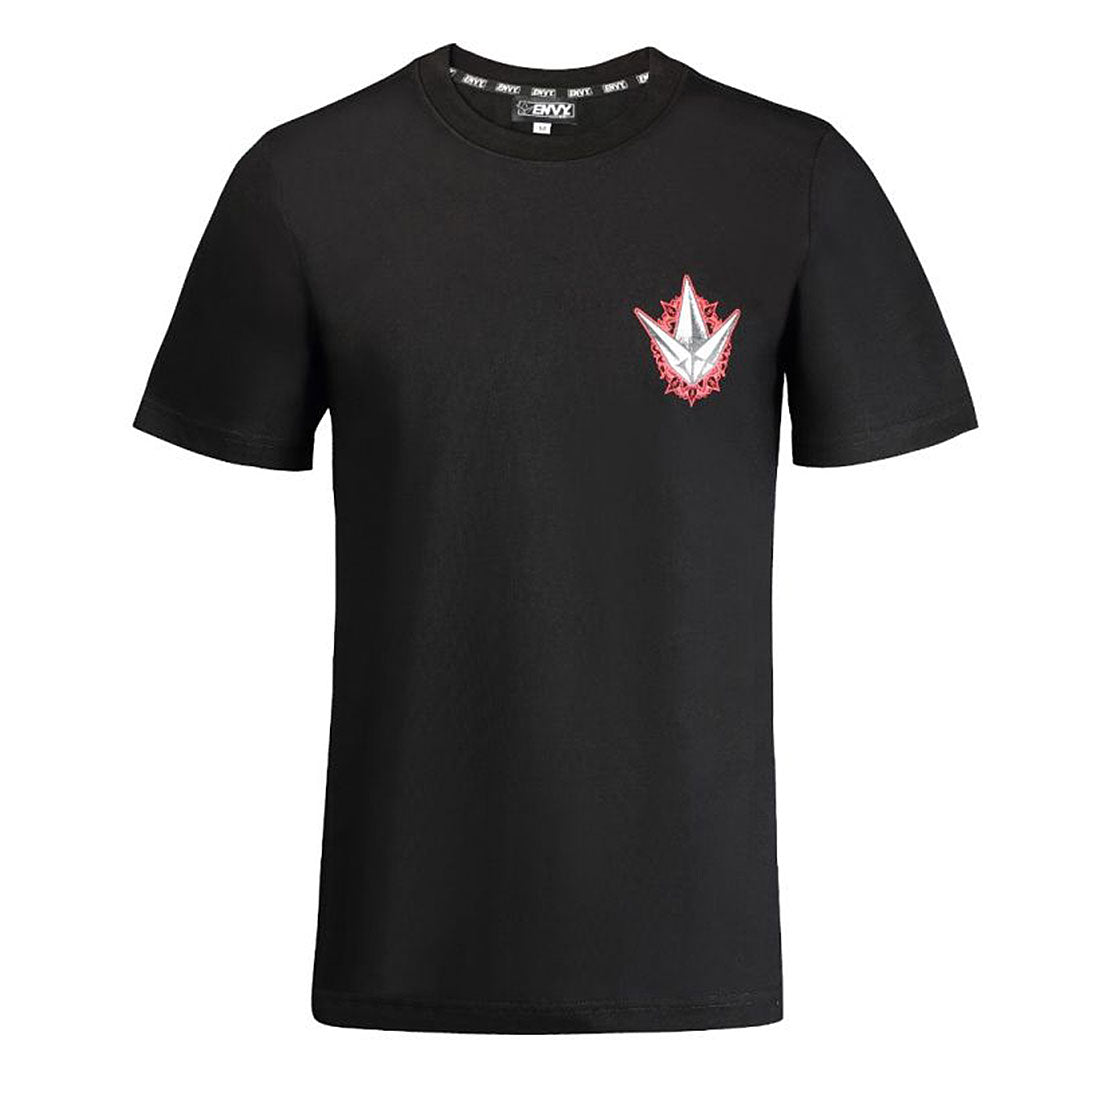 Envy Faith T-Shirt - Black Apparel Tshirts